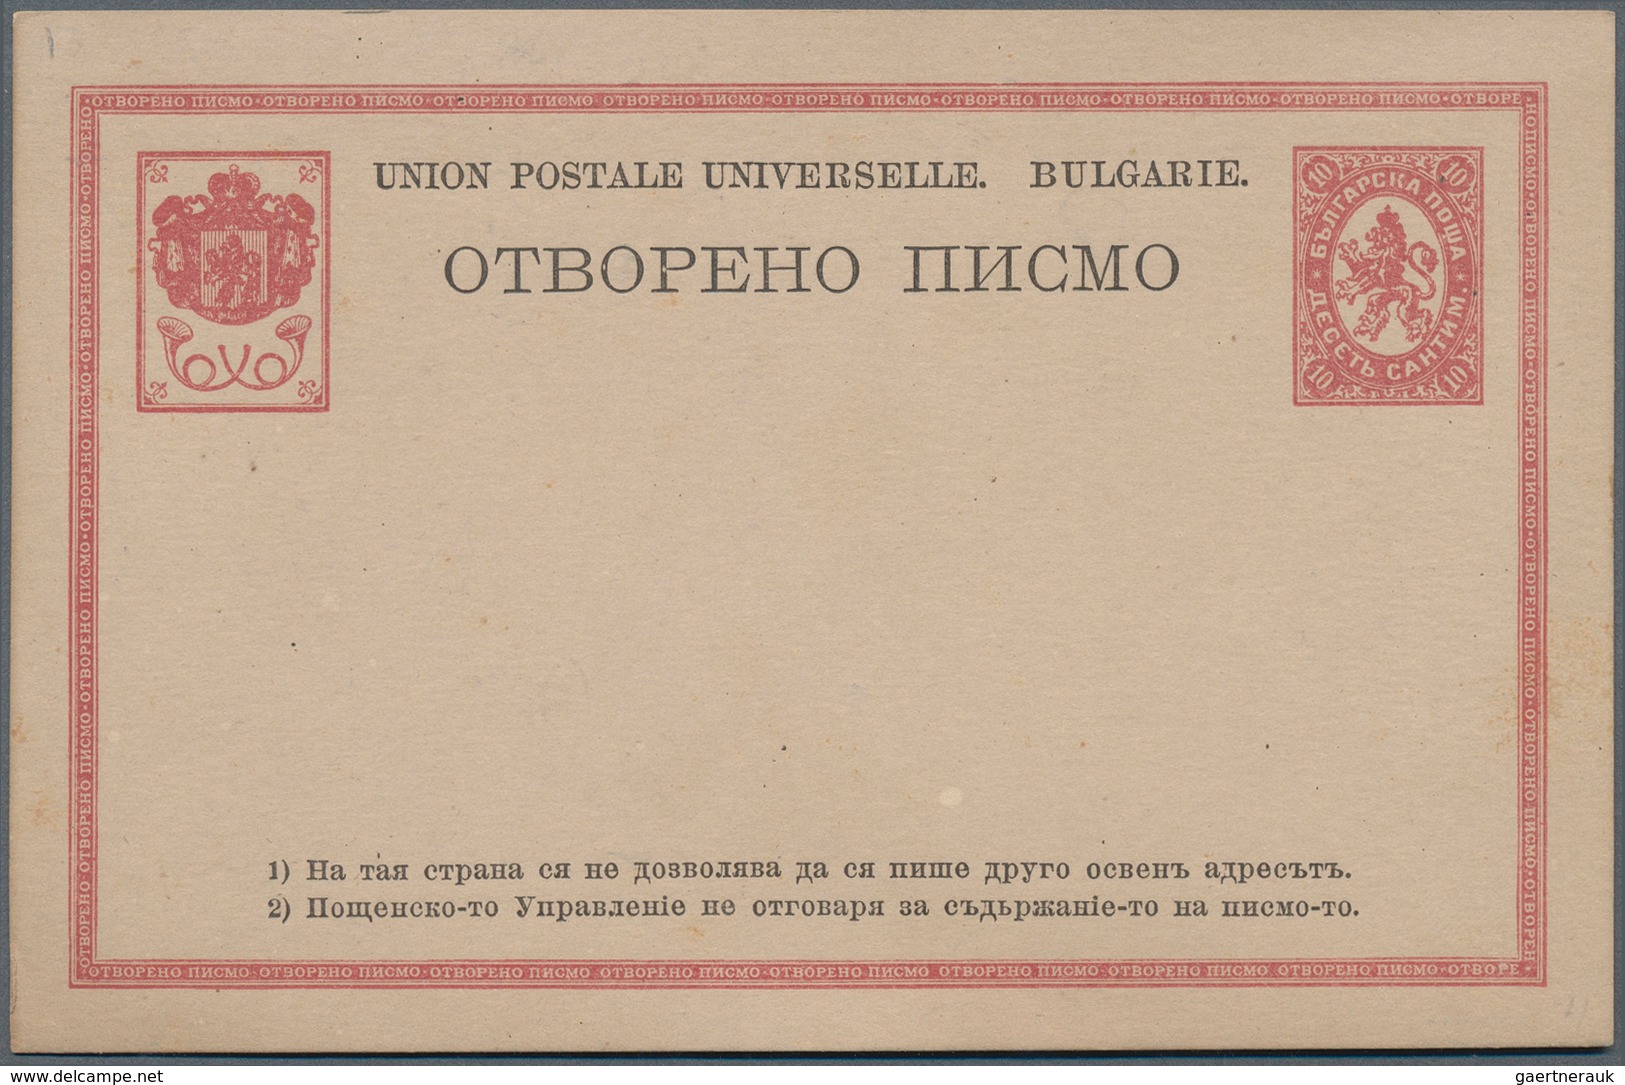 Bulgarien - Ganzsachen: 1879/1938 (ca.), Bestand von ca. 135 ungebrauchten und gebrauchten Ganzsache